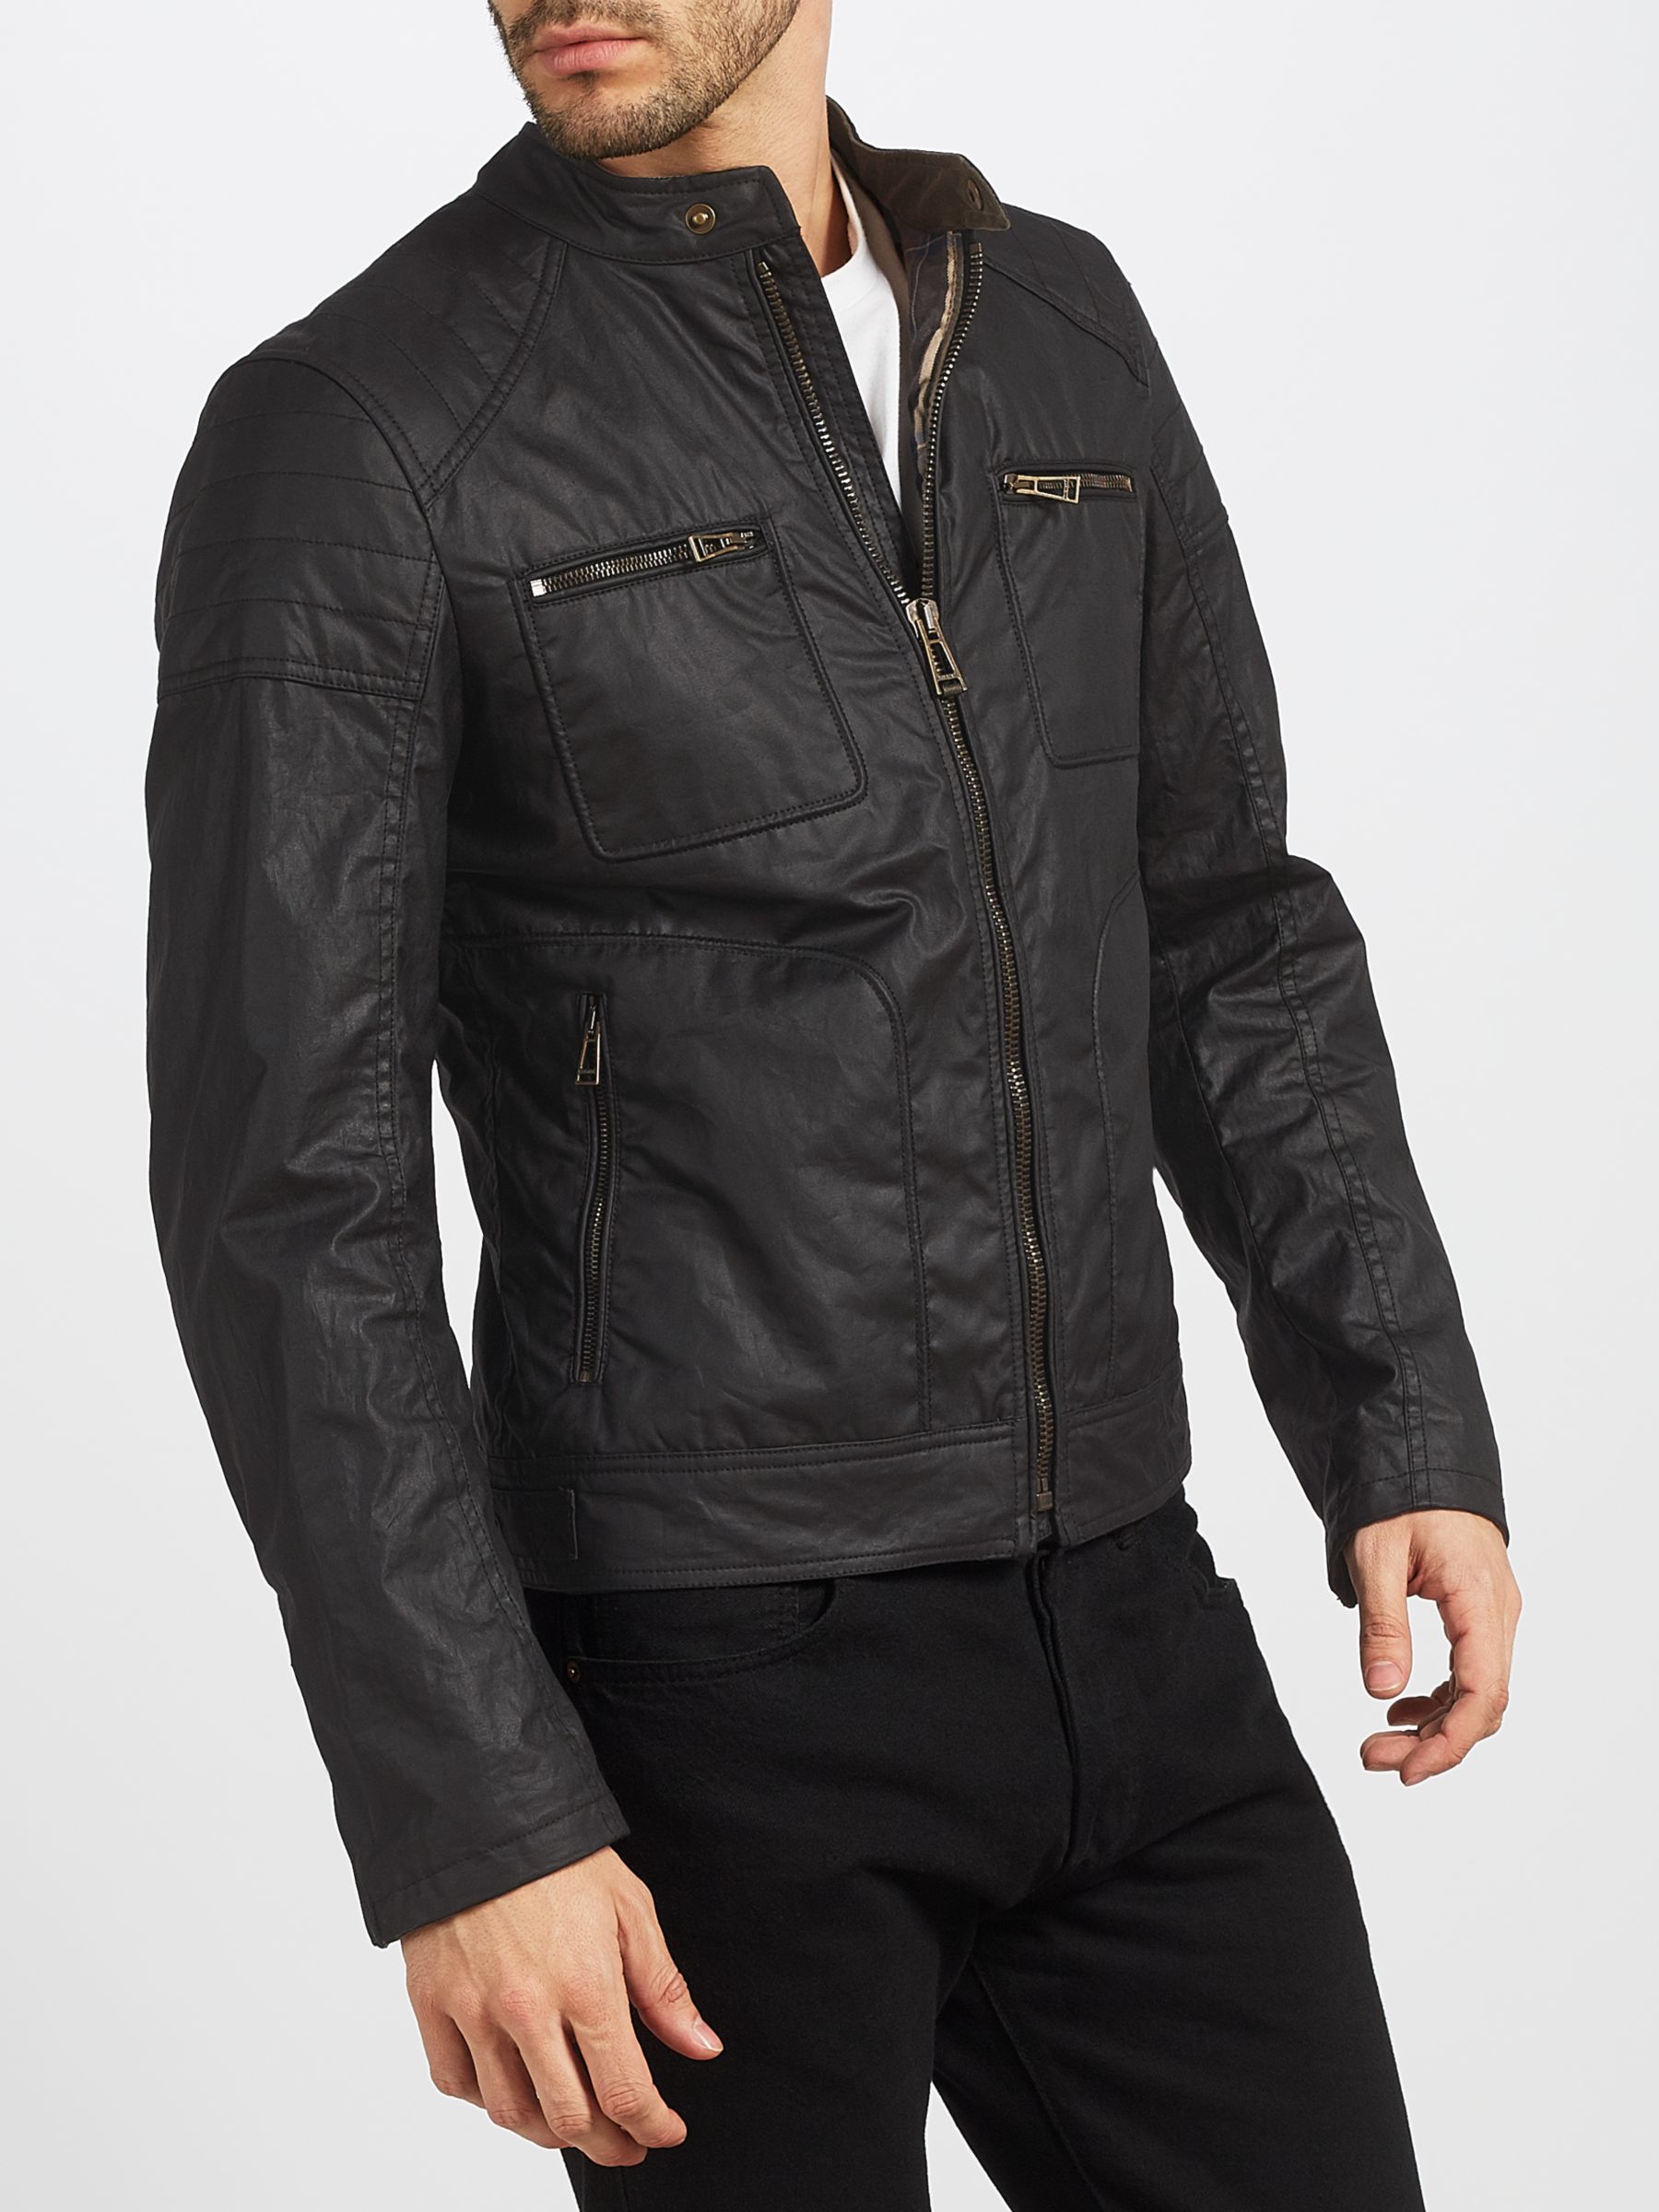 Belstaff Weybridge Rubberized Jersey Jacket, Black at John Lewis & Partners